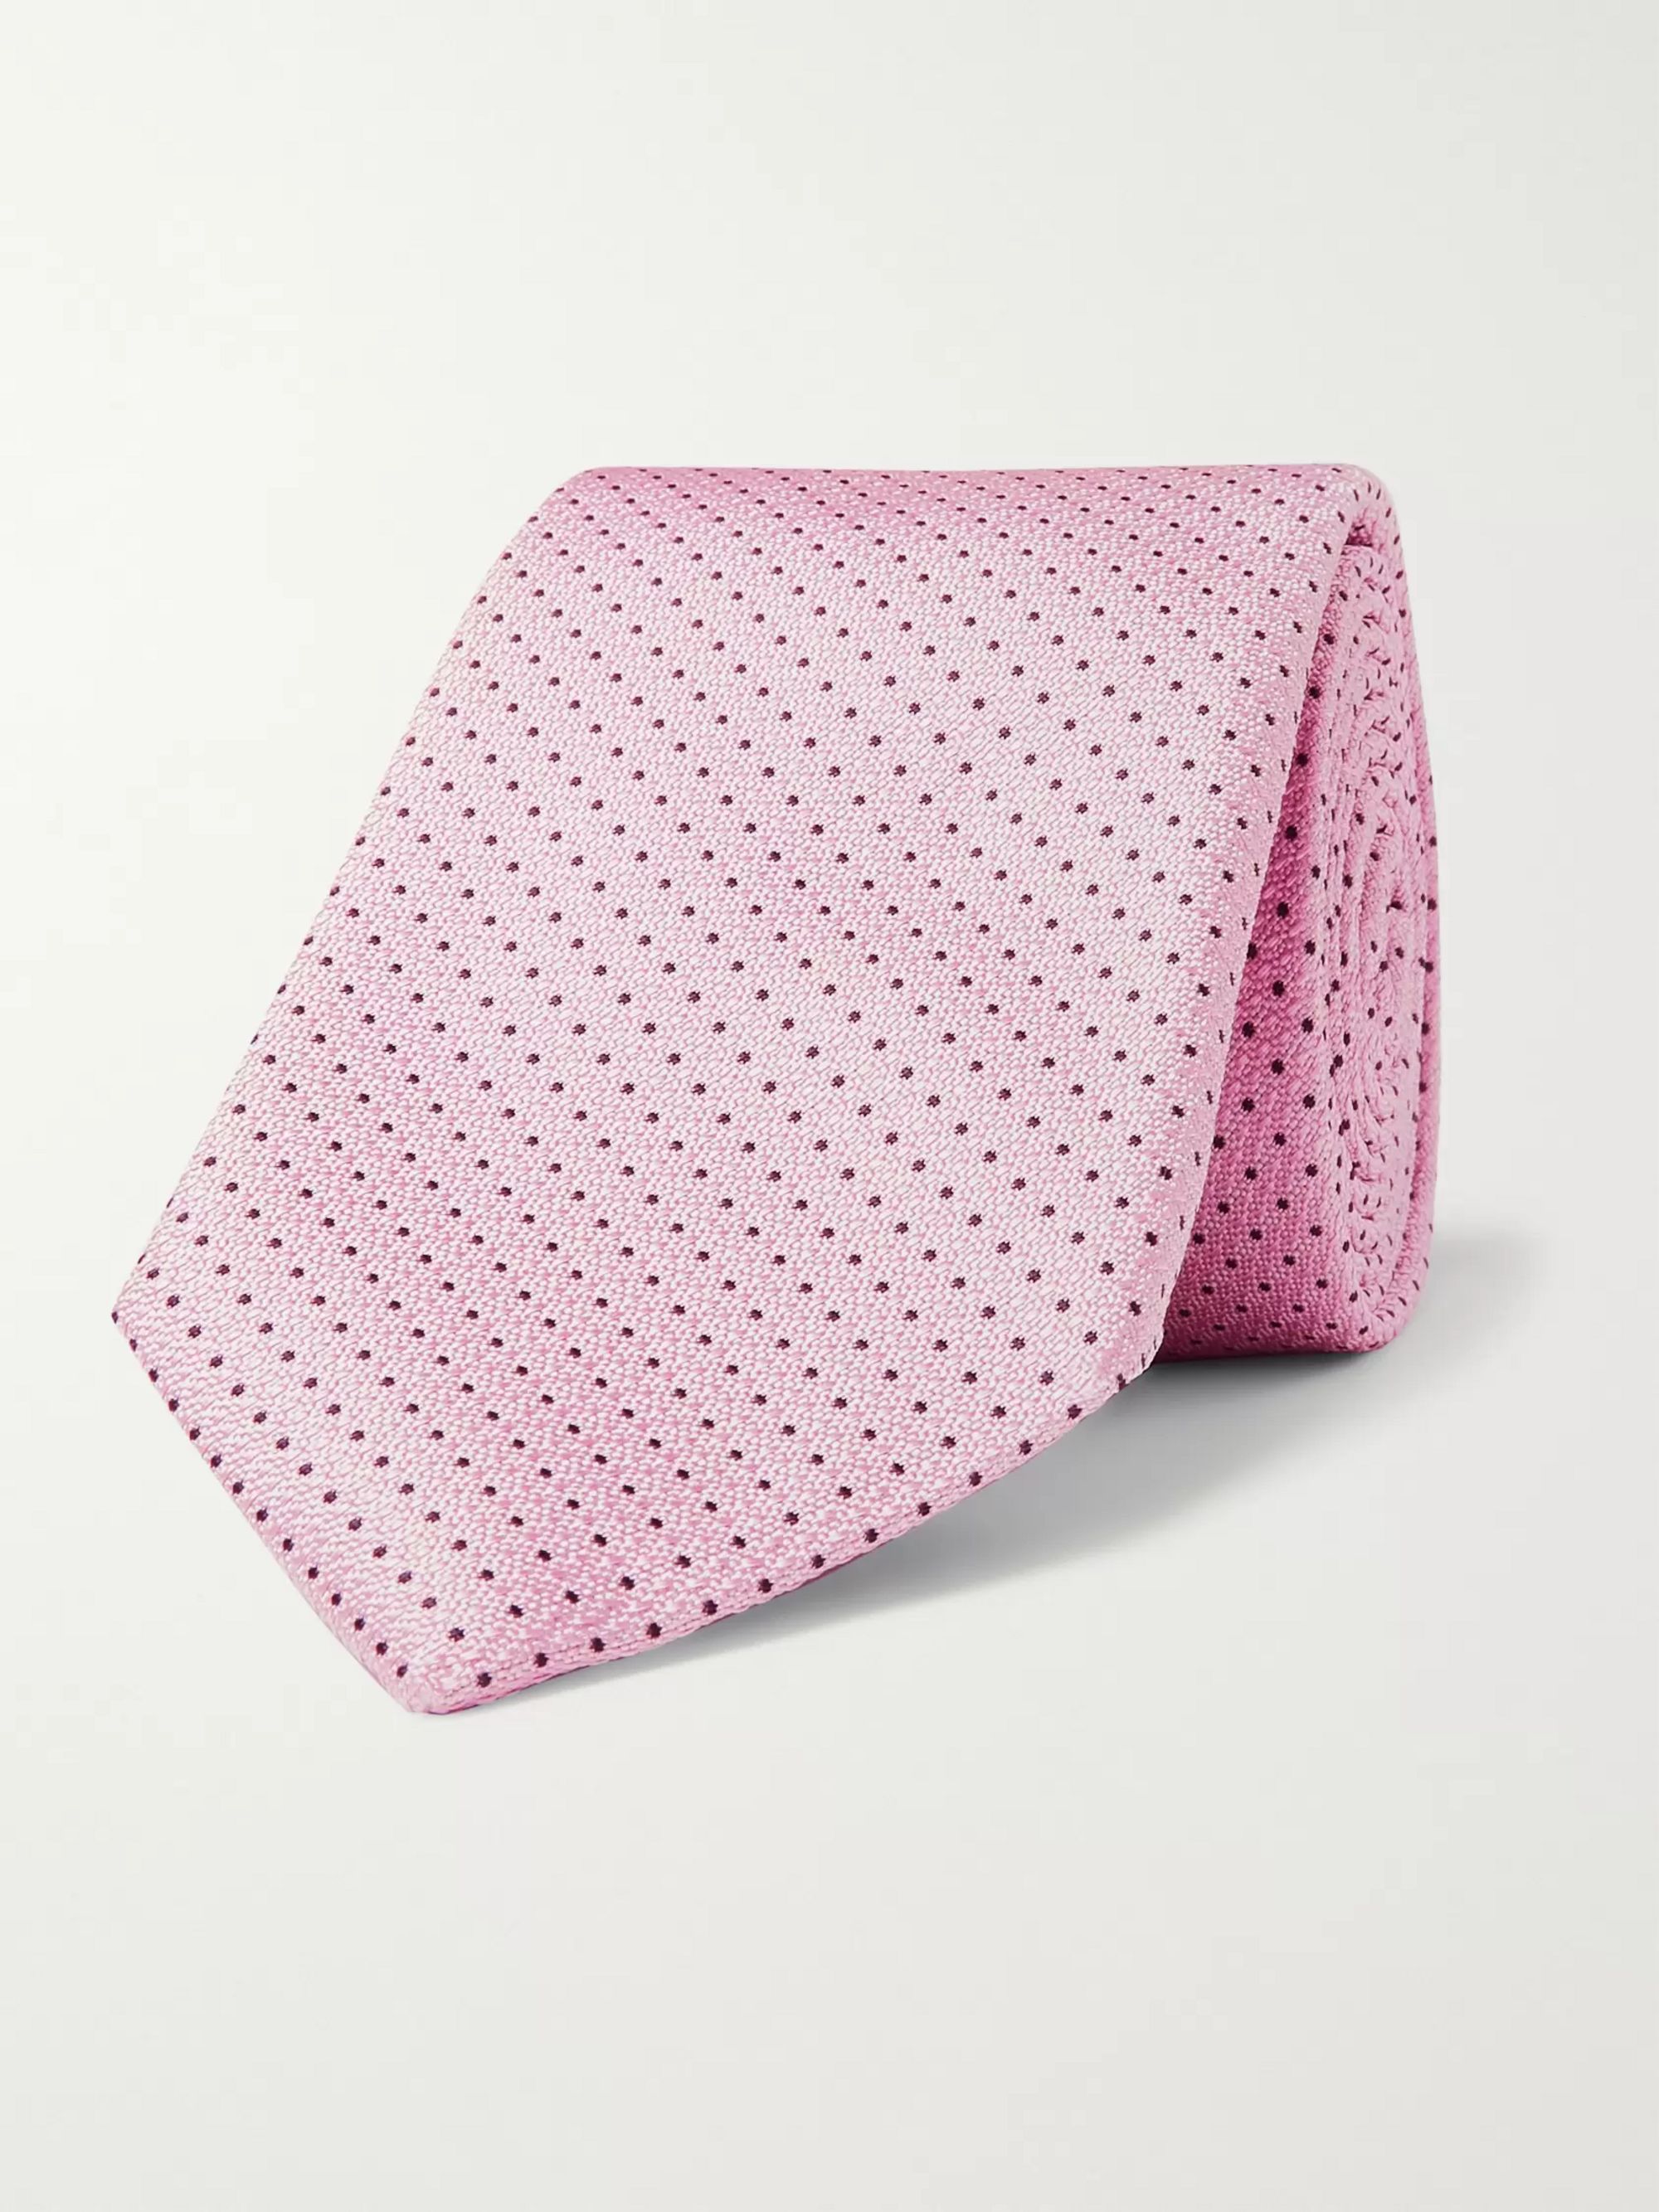 hugo boss pink tie